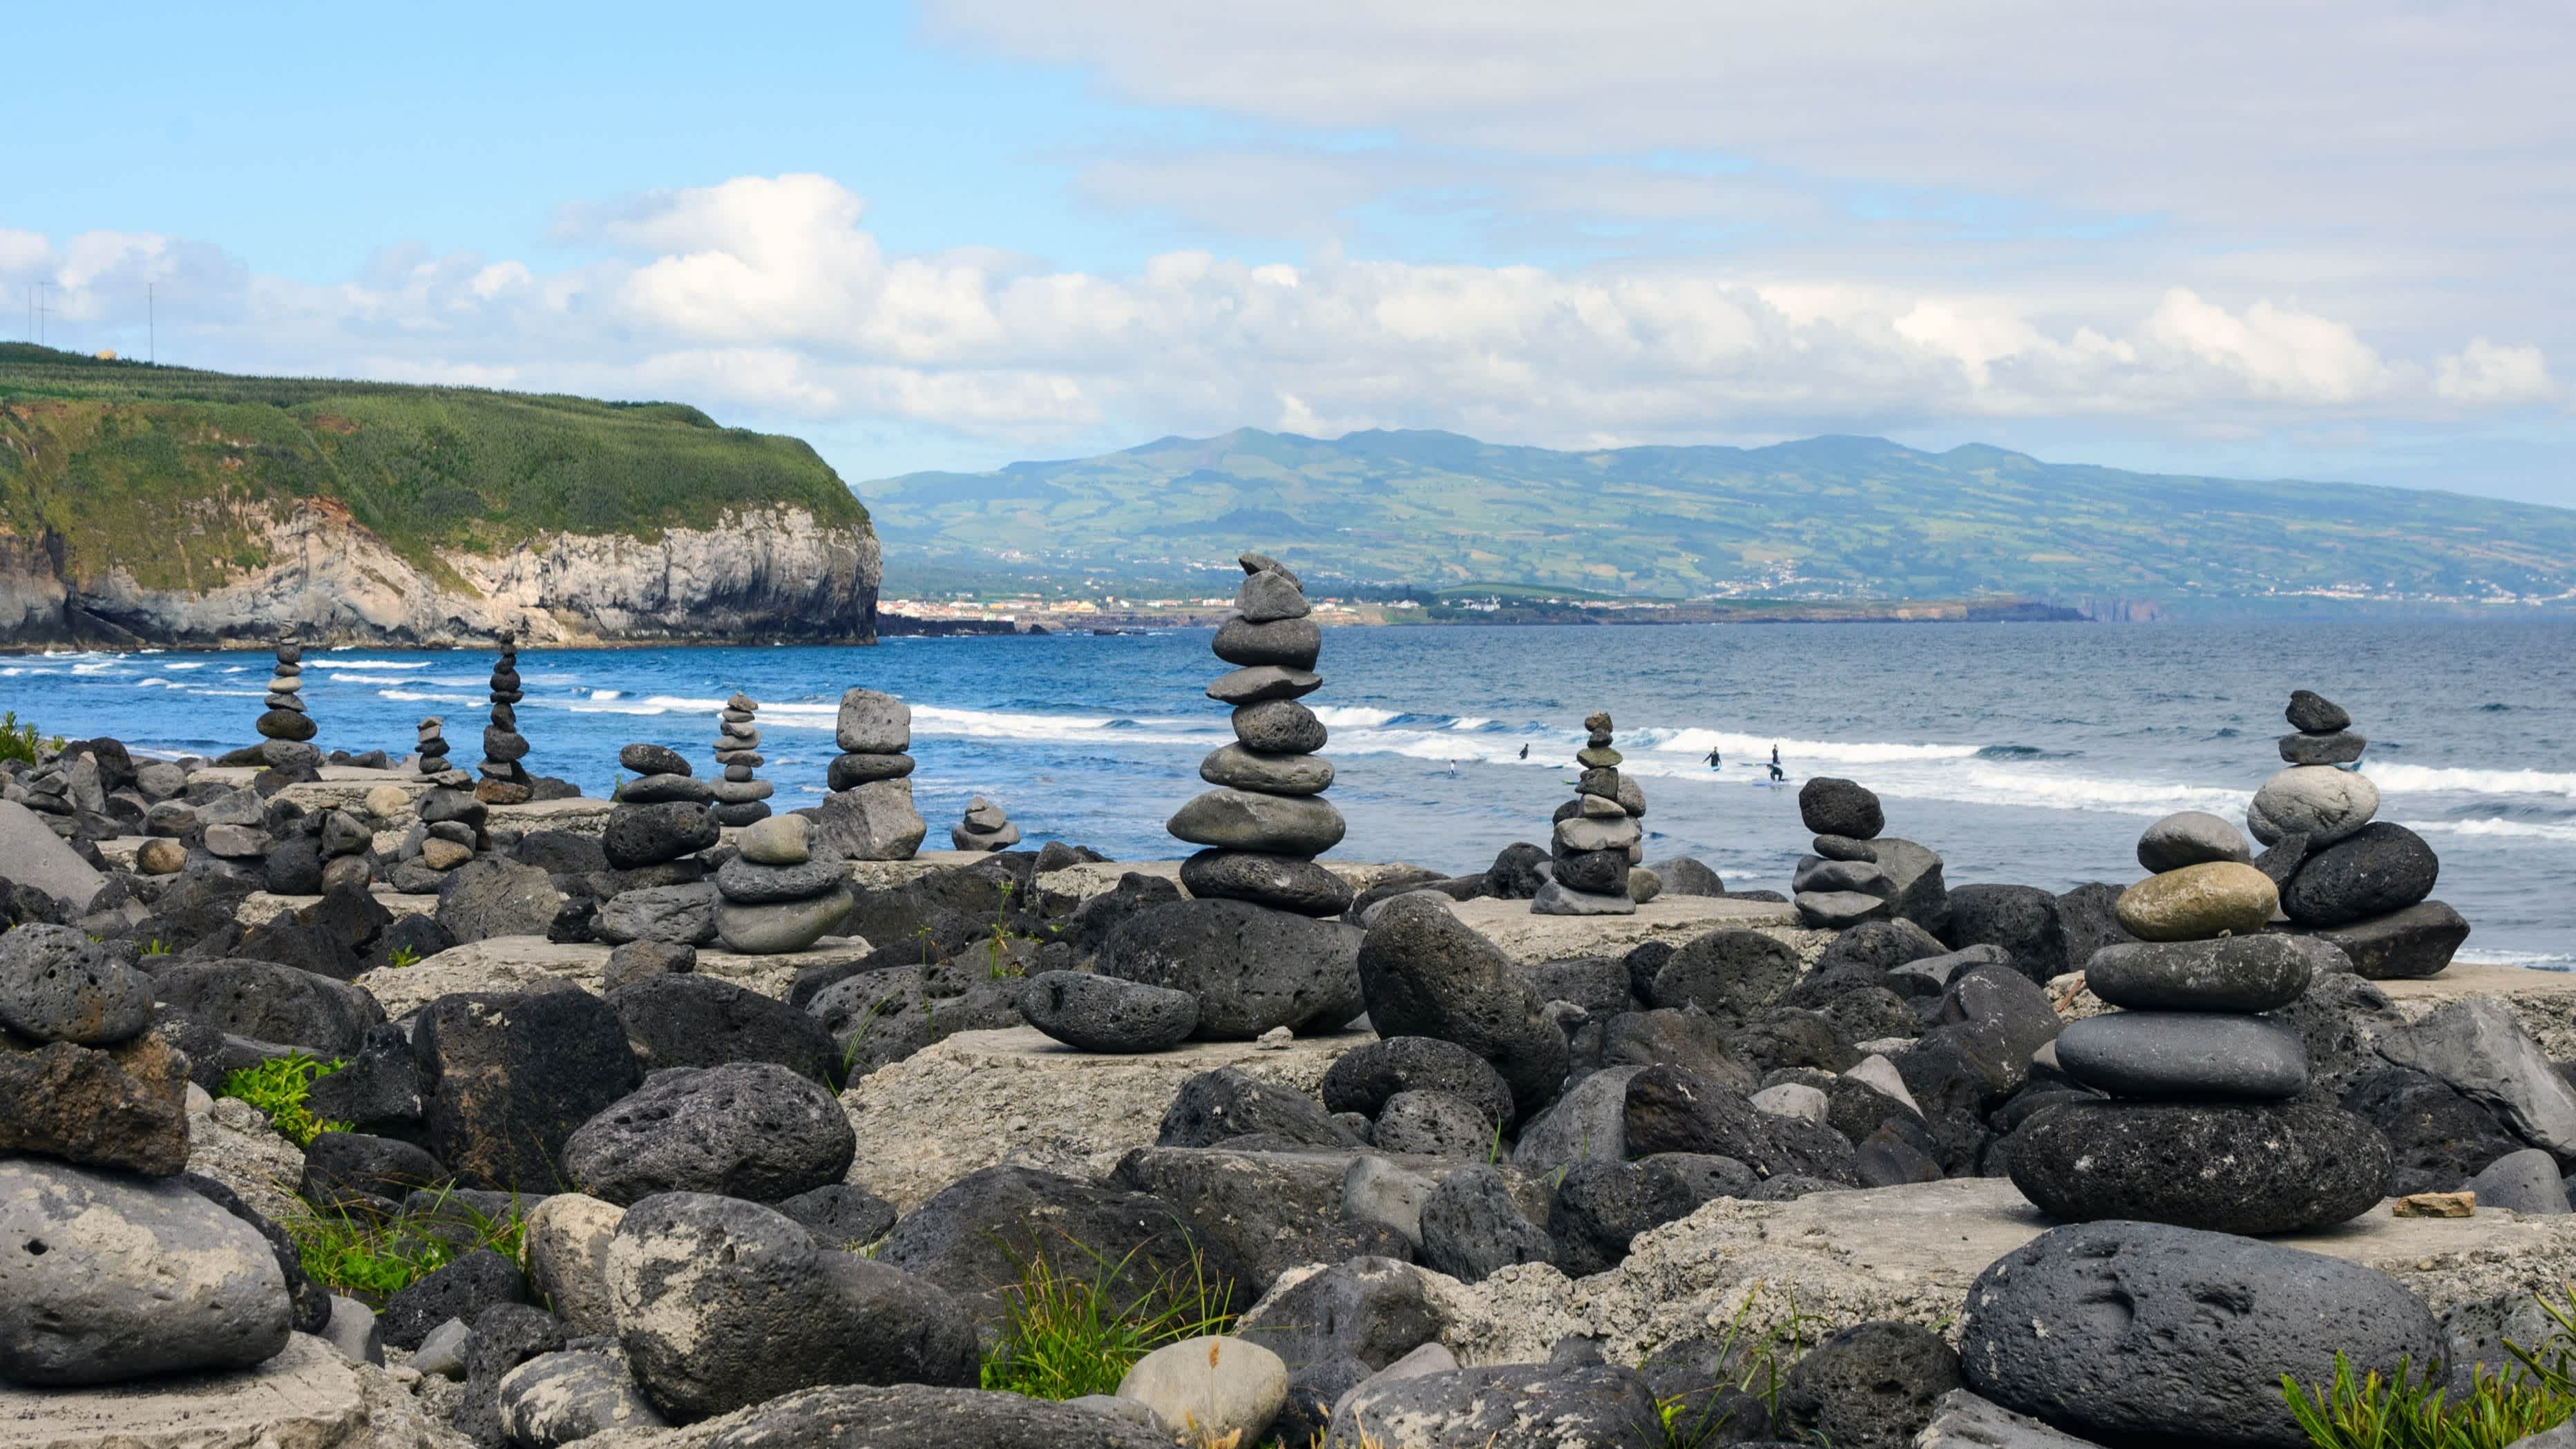 Der Strand von Praia do Areal de Santa Barbara, Insel San Miguel, Azoren, Portugal mit Steinskulpturen im Bild und dem Meer sowie Hügeln im Hintergrund. 